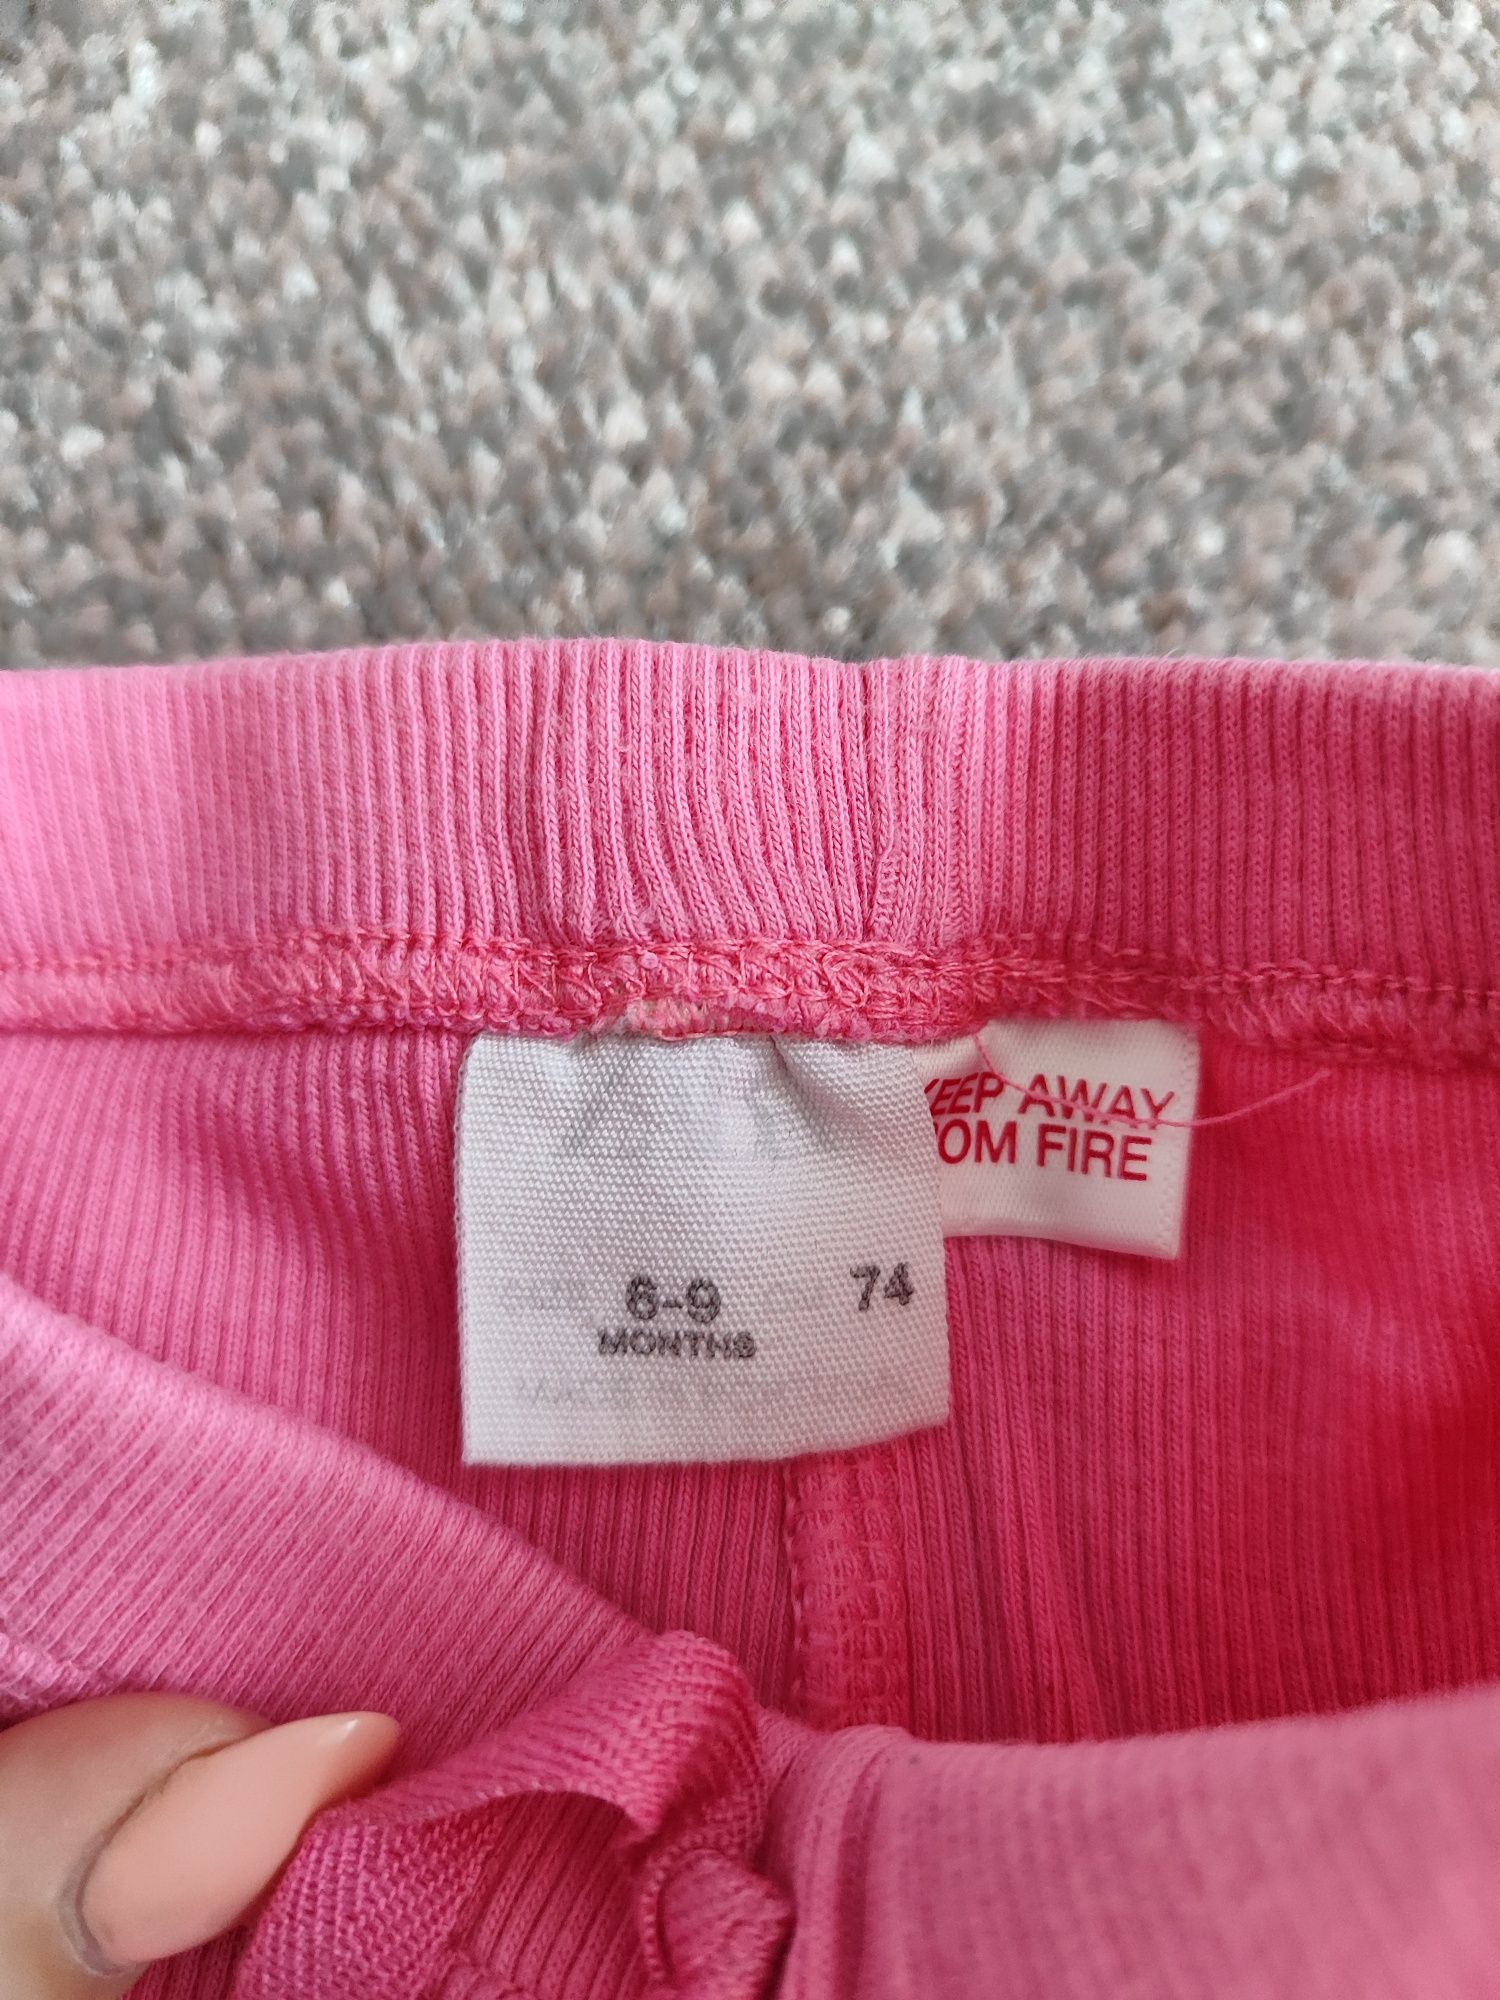 Spodnie różowe, Zara, 74